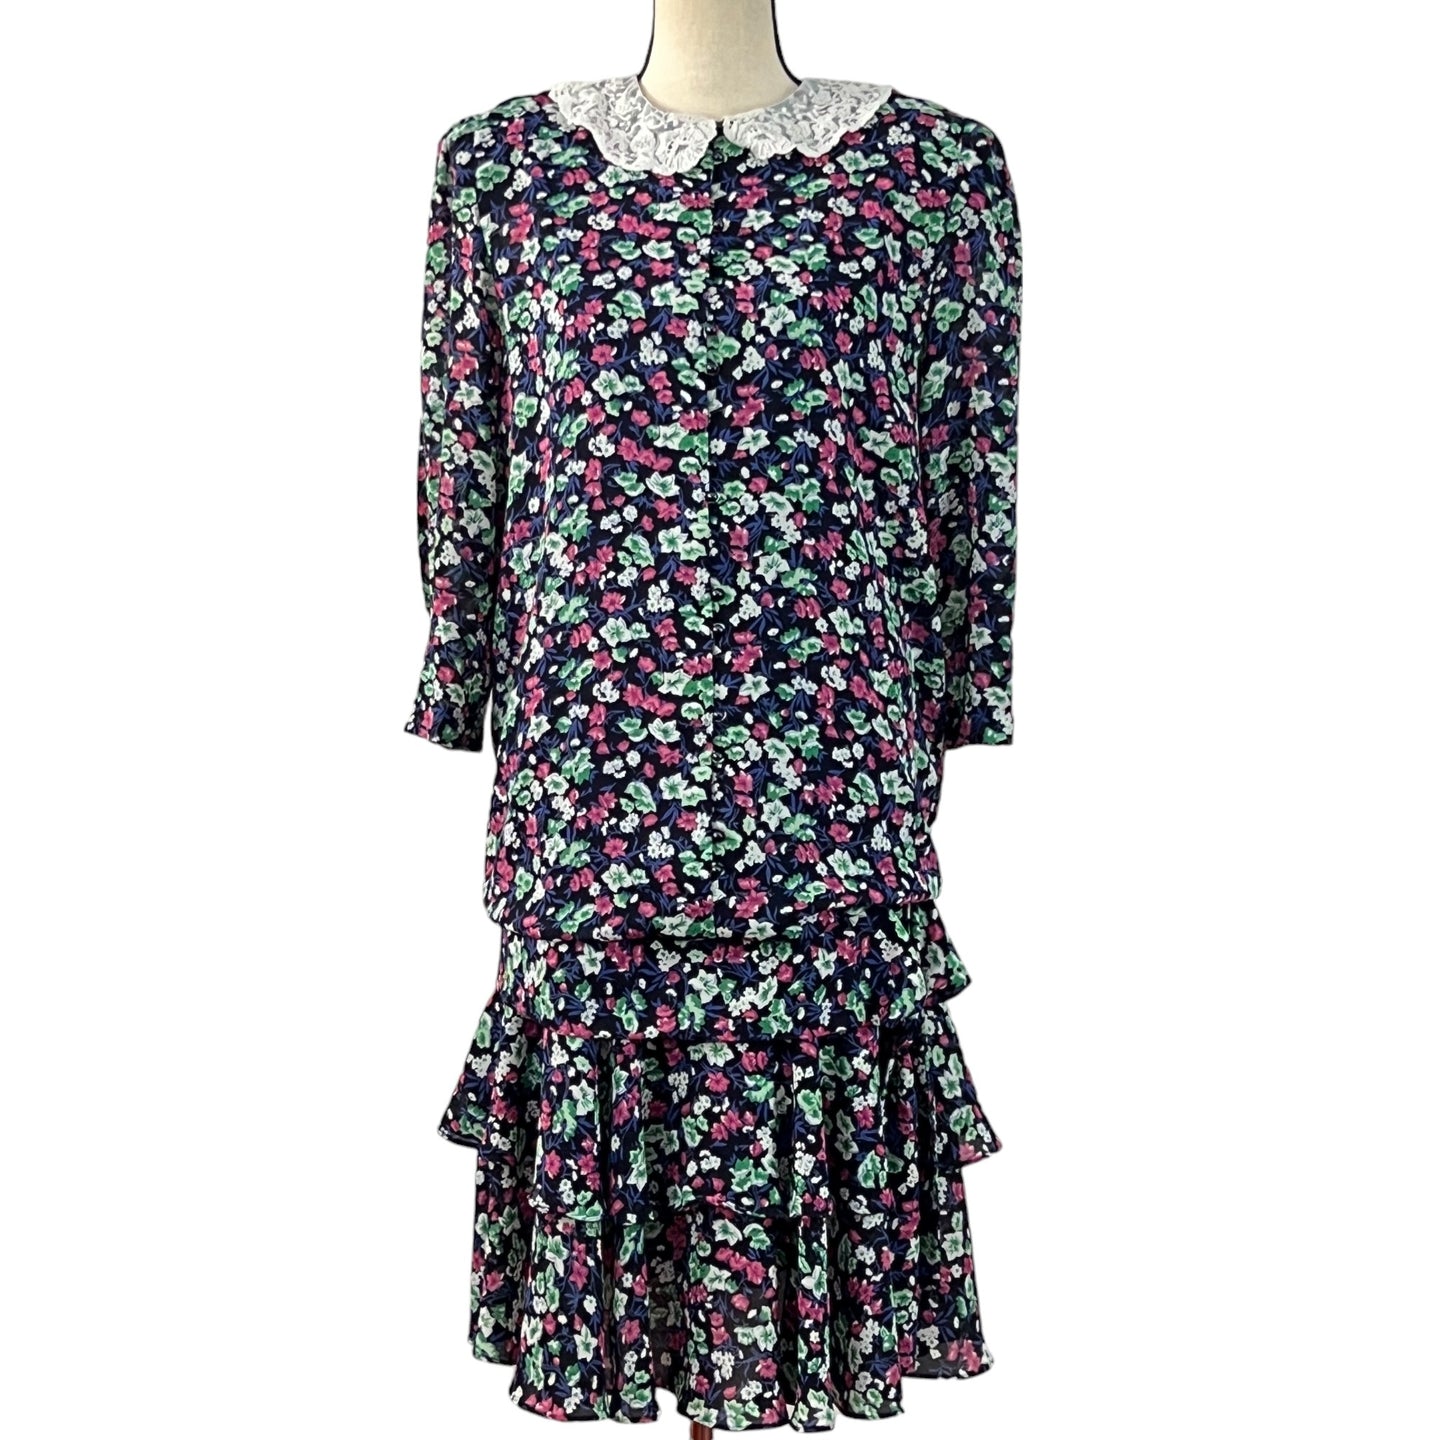 Vintage Lace Collar Cottage Core Floral Ruffle Dress Size 8